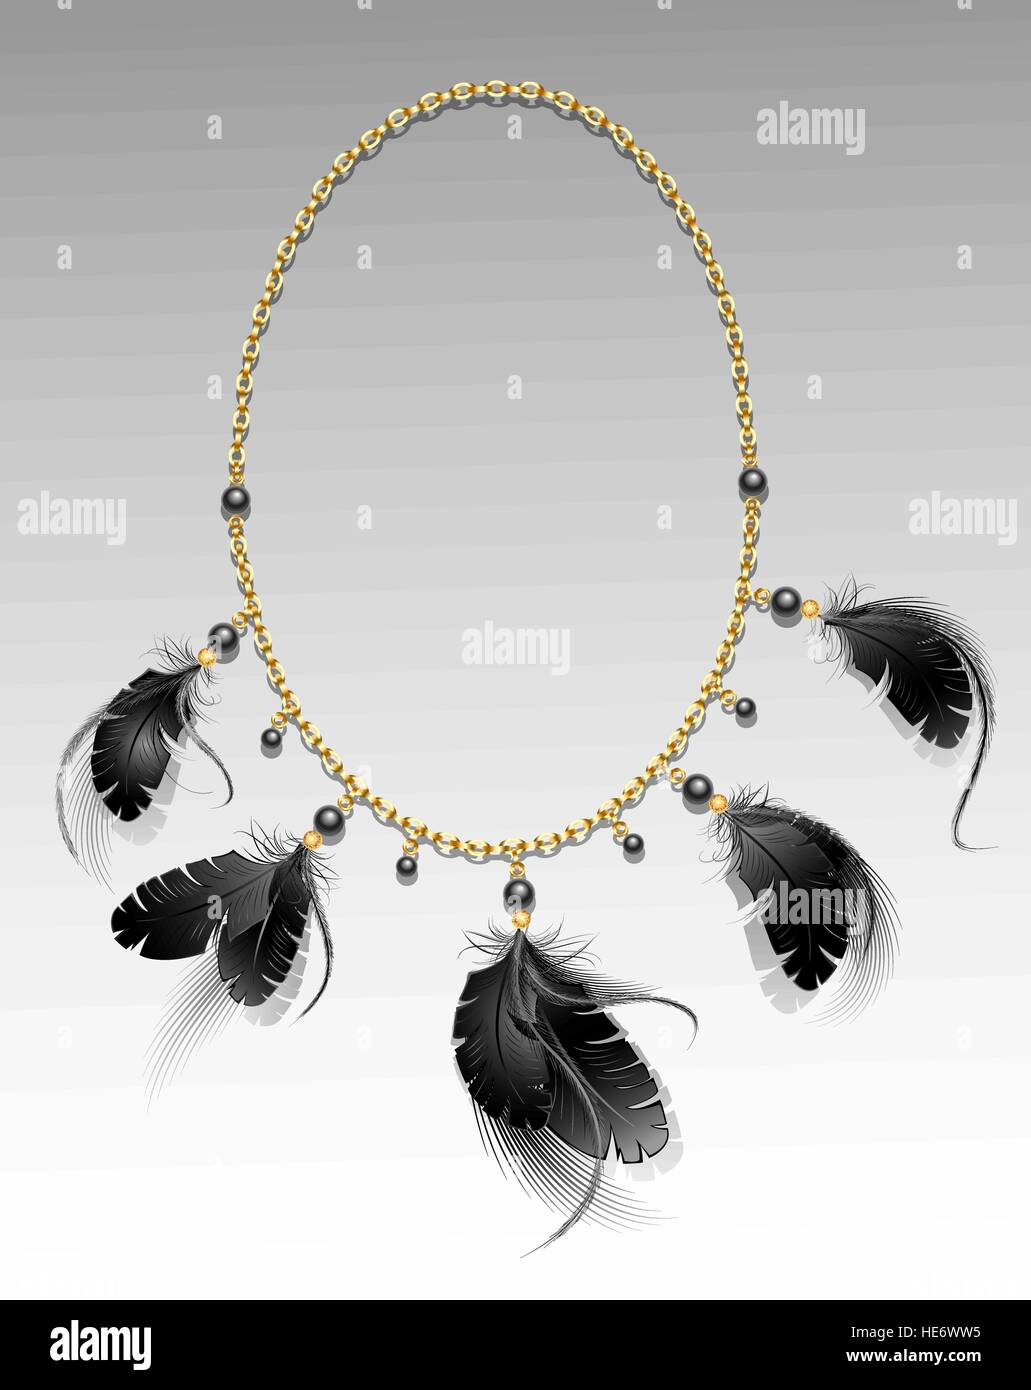 goldene Kette mit schwarzen Federn und Perlen auf einem grauen Hintergrund. Stock Vektor